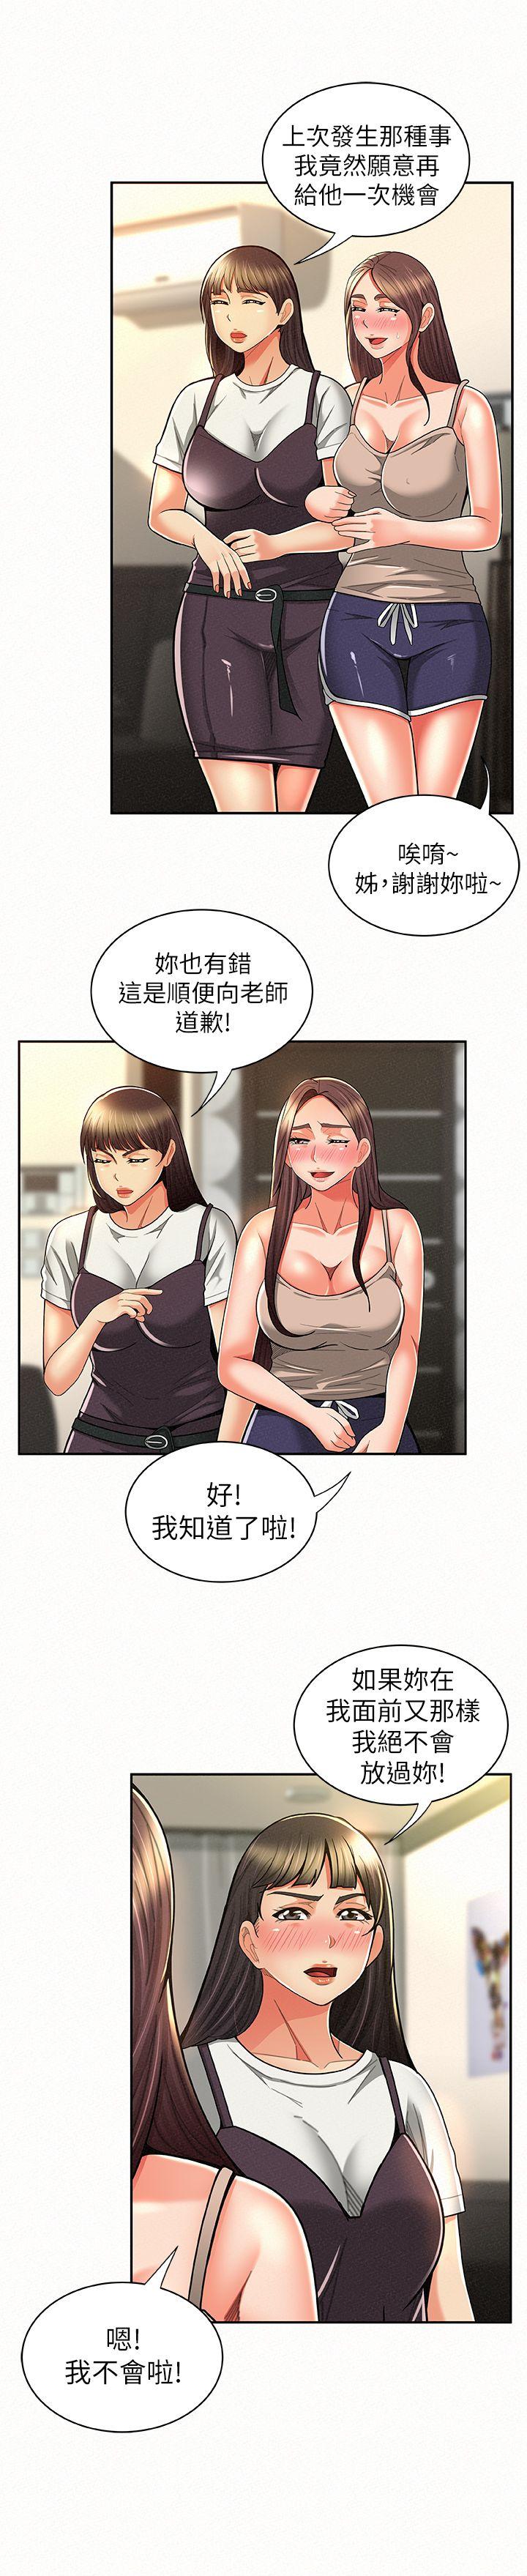 韩国污漫画 報告夫人 第10话-仁华的情色家教时间 4